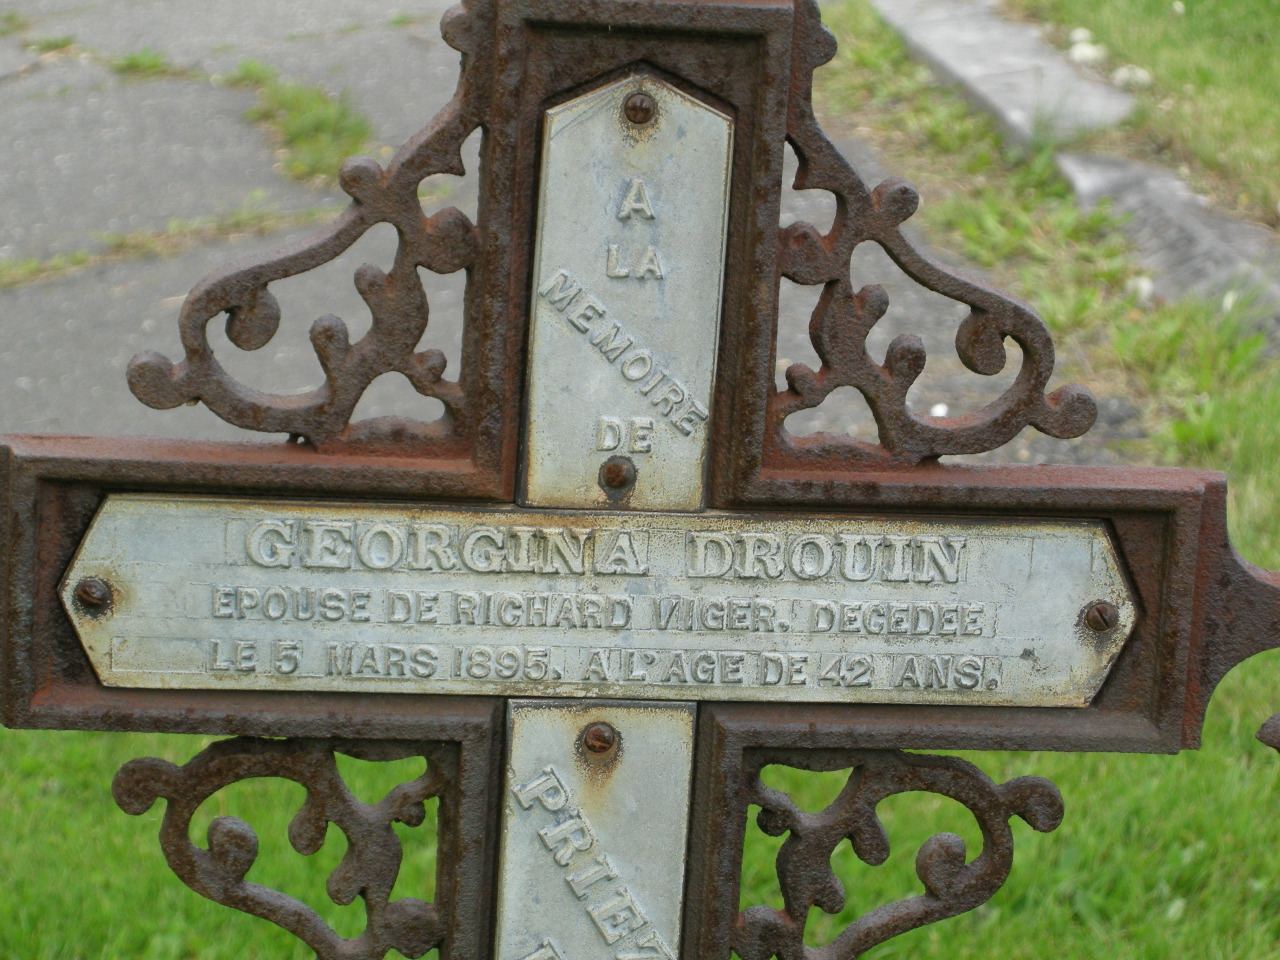 Plus vielle croix du cimetière de Scott (Georgina Drouin 5 mars 1895).